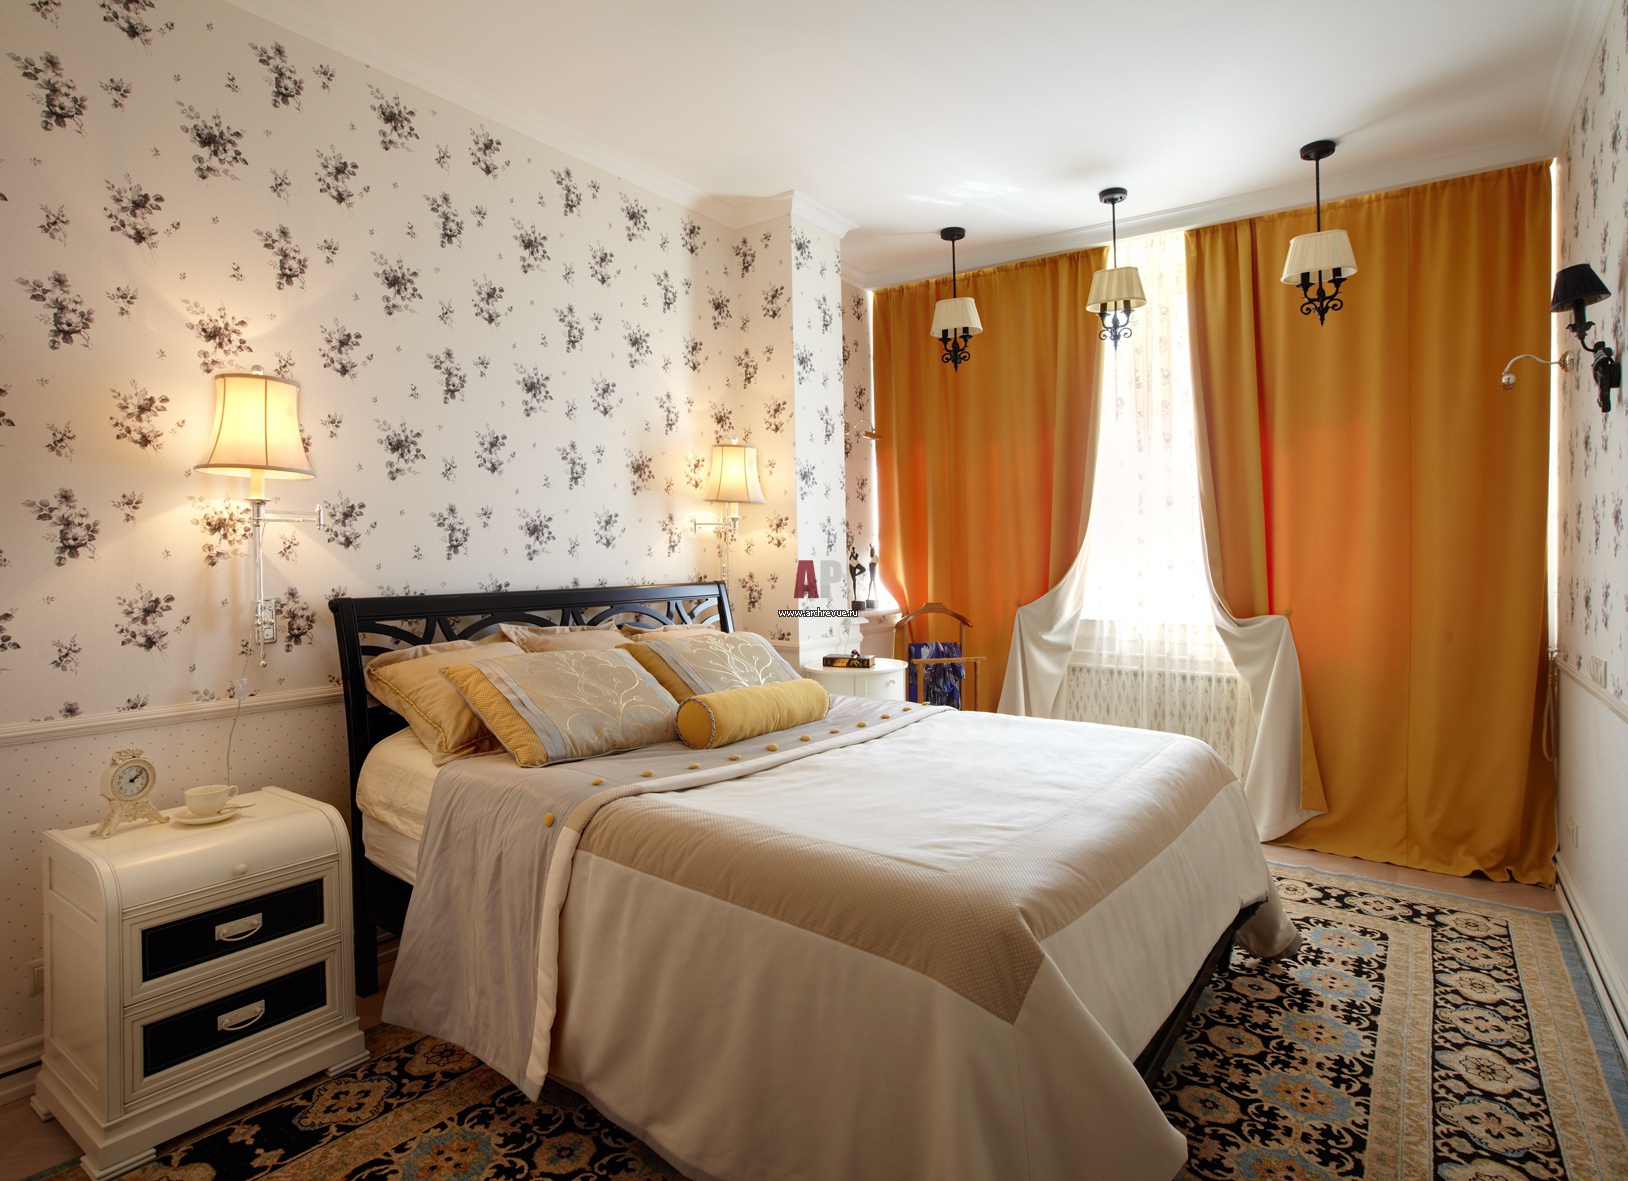 Интерьер спальни в небольшой квартире » Современный дизайн на Vip-1gl